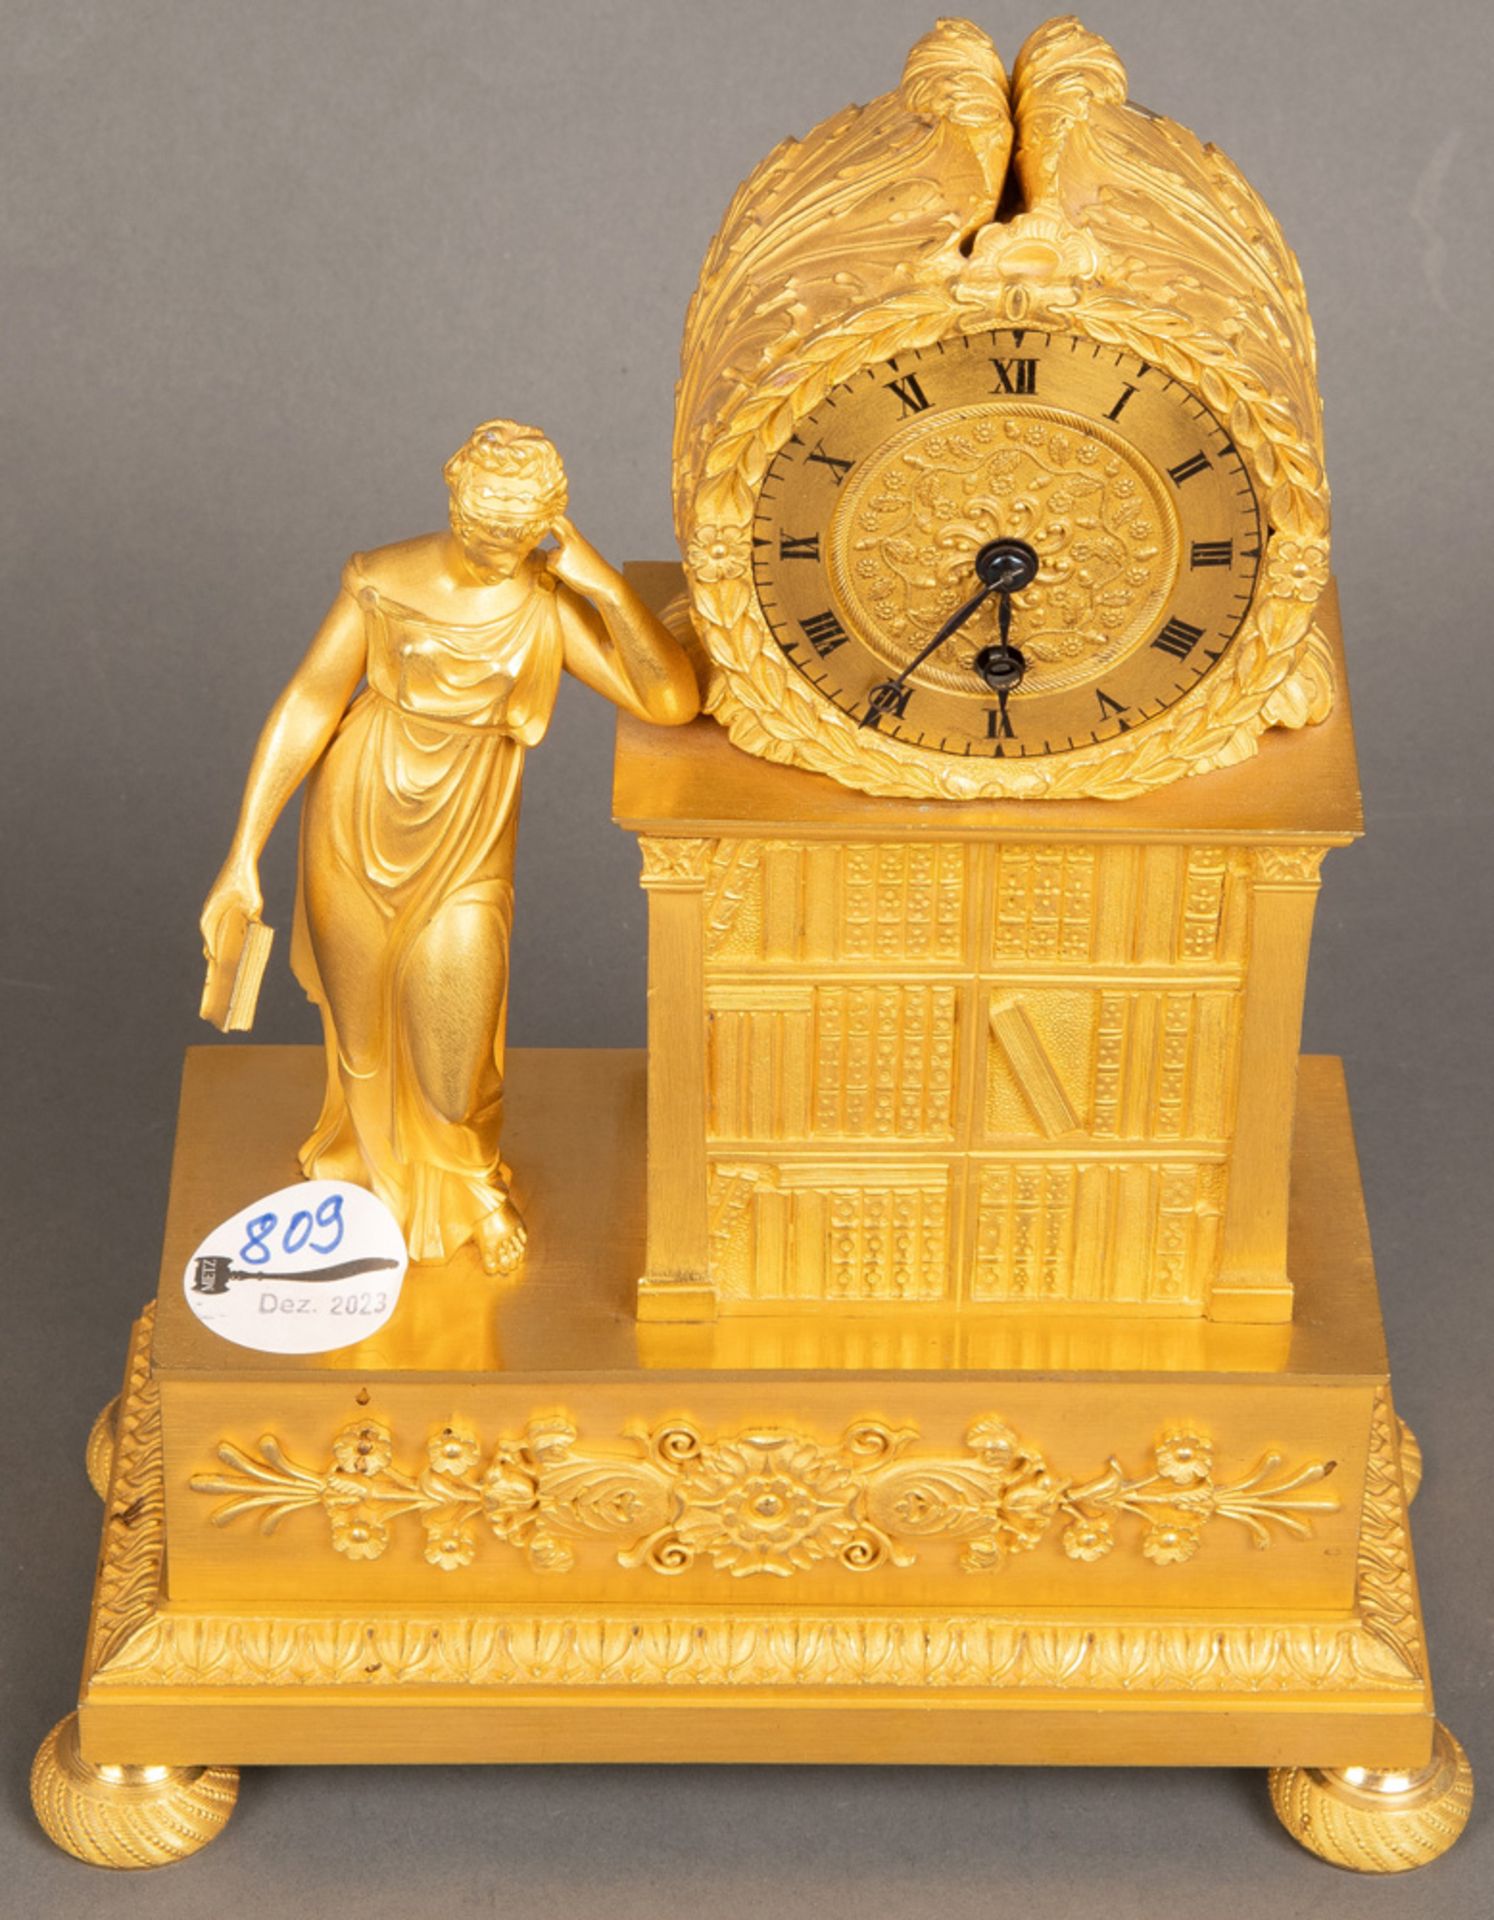 Empire-Tischuhr. Paris 19. Jh. Bronze, feuervergoldet. Rundes Uhrwerk mit einfachem Schlüsselaufzug,